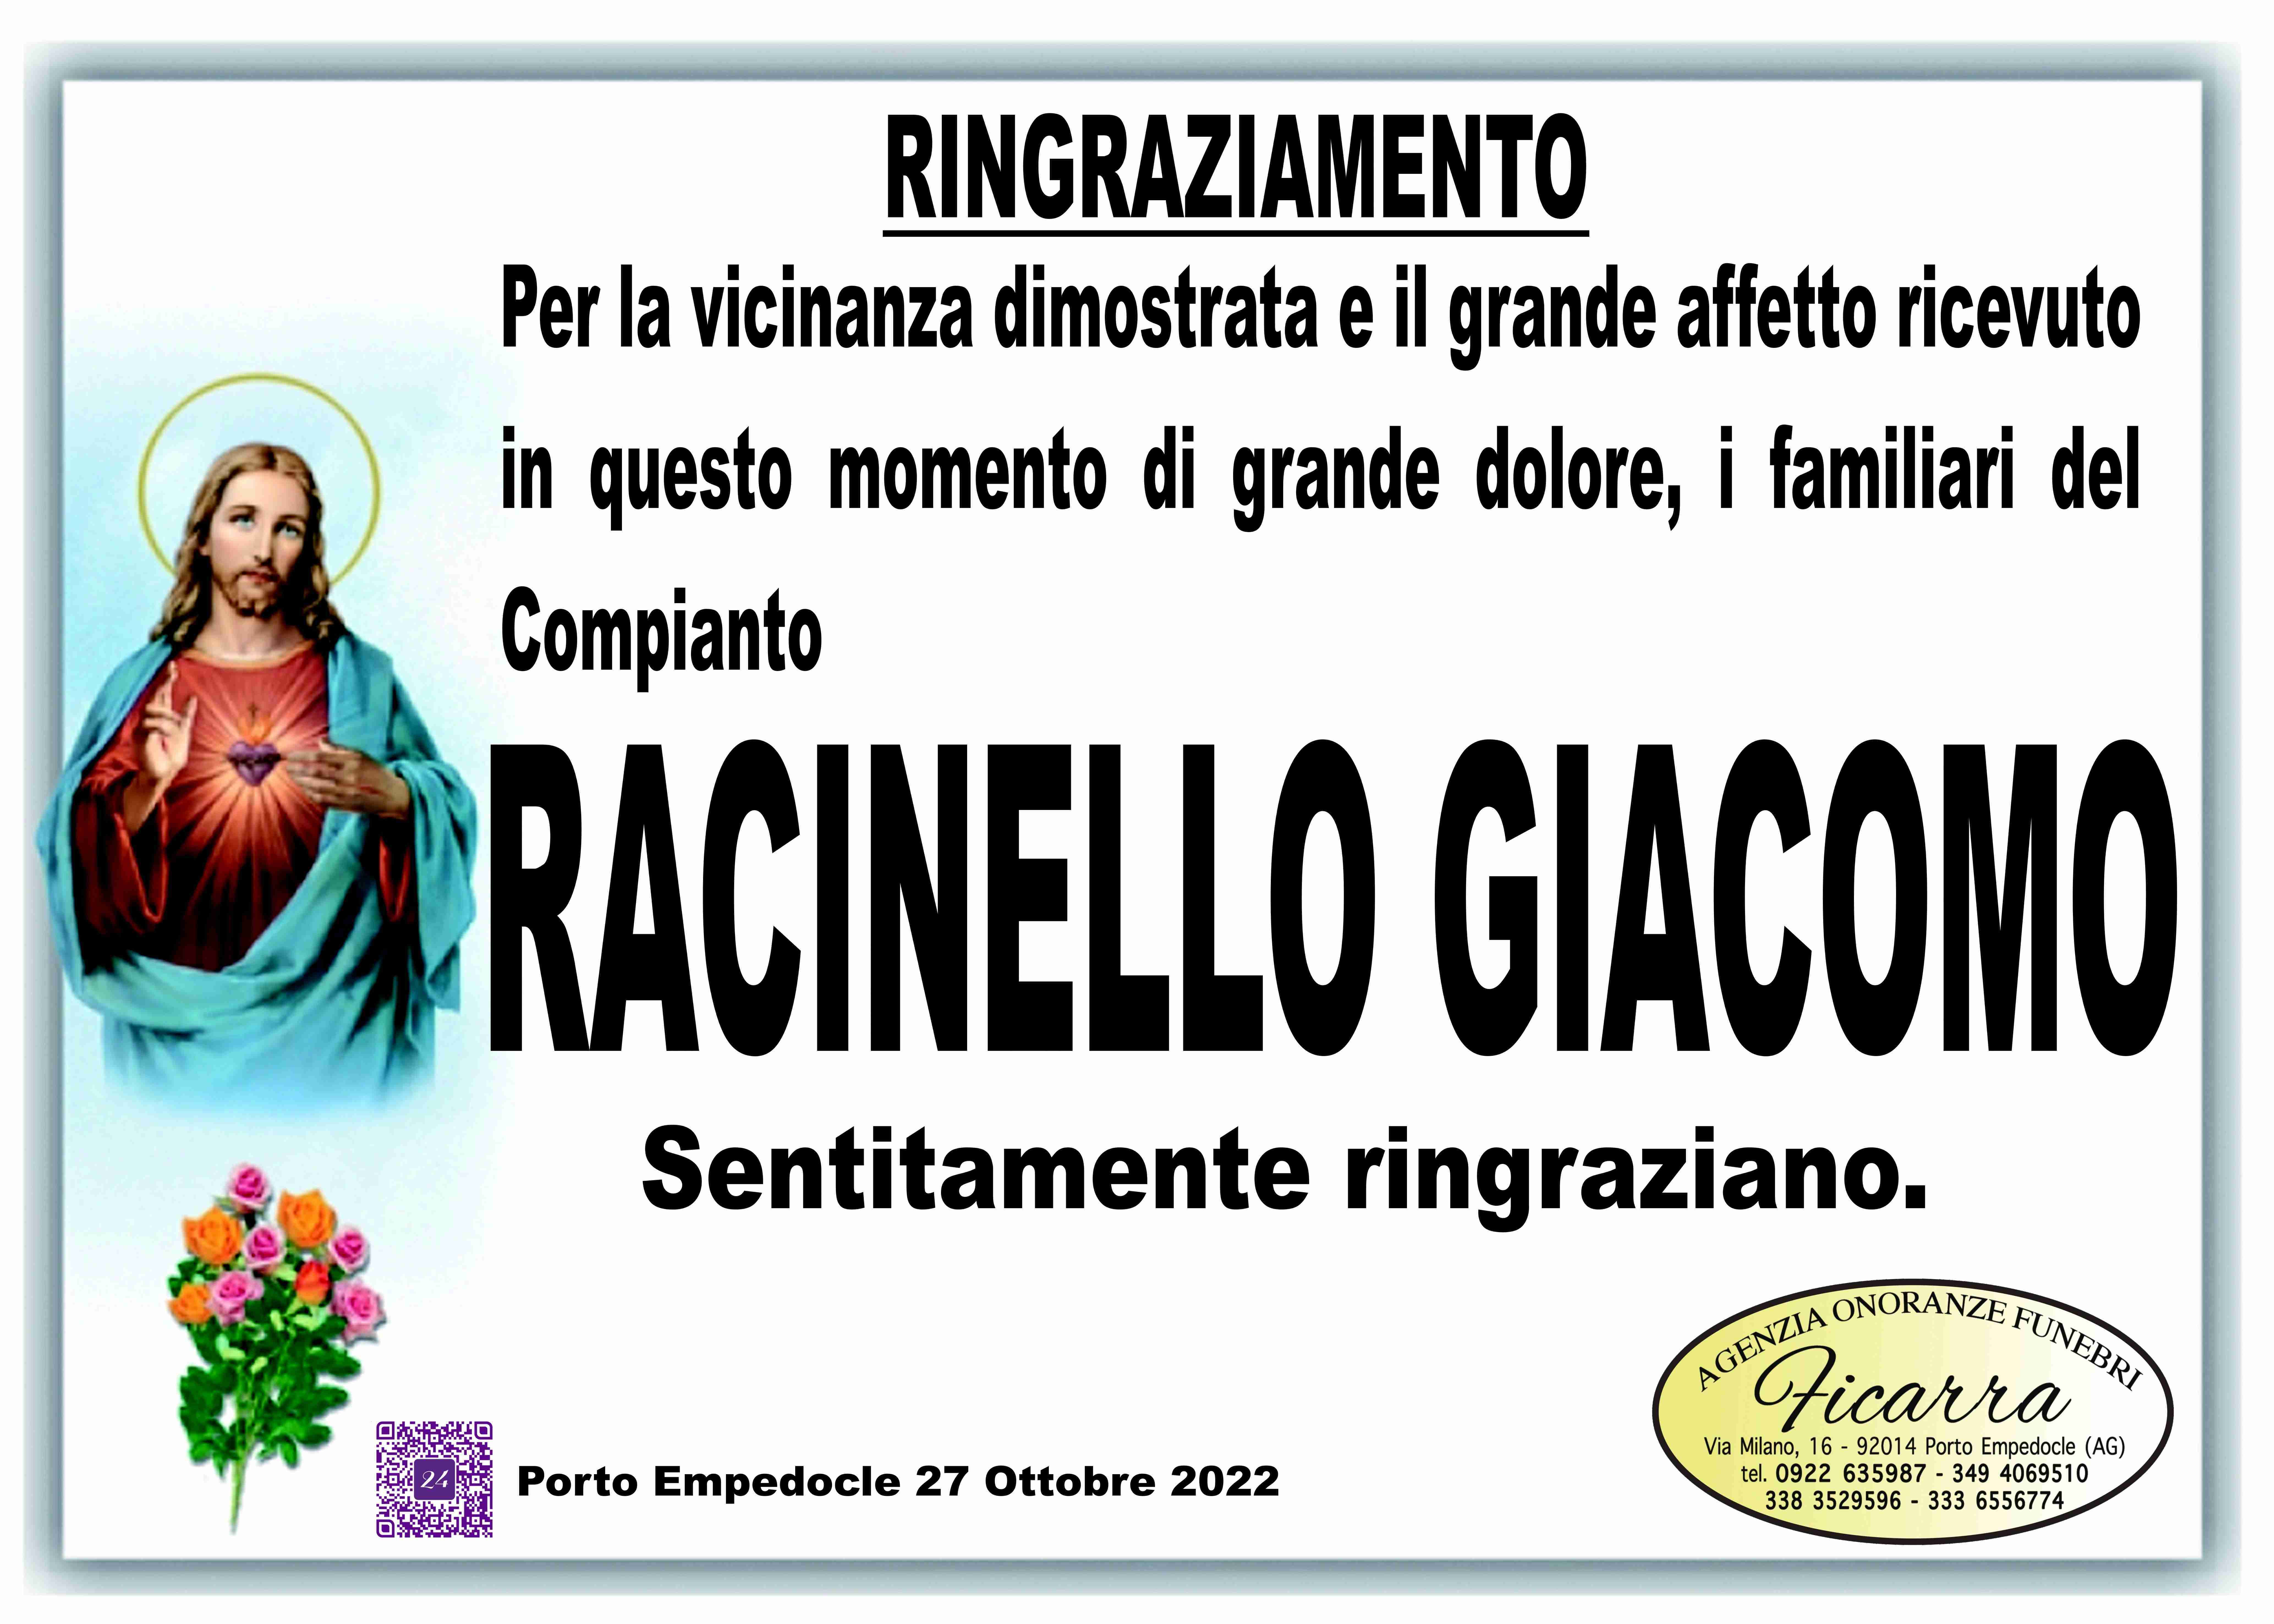 Giacomo Racinello